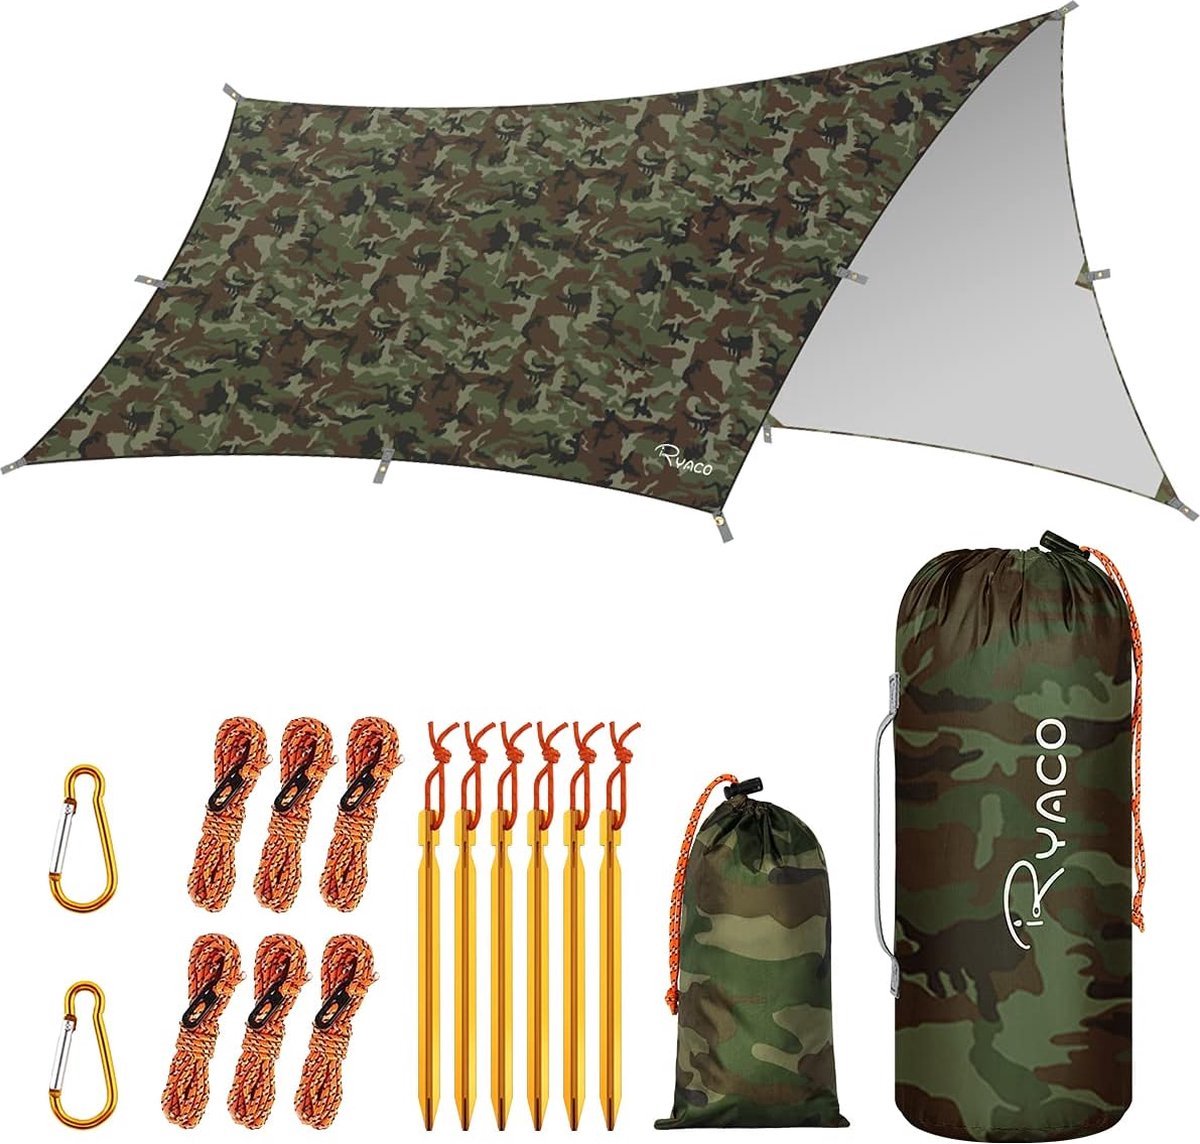 Ryaco Outdoor Tentzeil - Campingzeil - Zonnescherm met Opbergtas - Waterdicht - UV-Bestendig - Tarps voor kamperen - 3-4 Personen - 290 x 350 cm - Camouflage - Ryaco